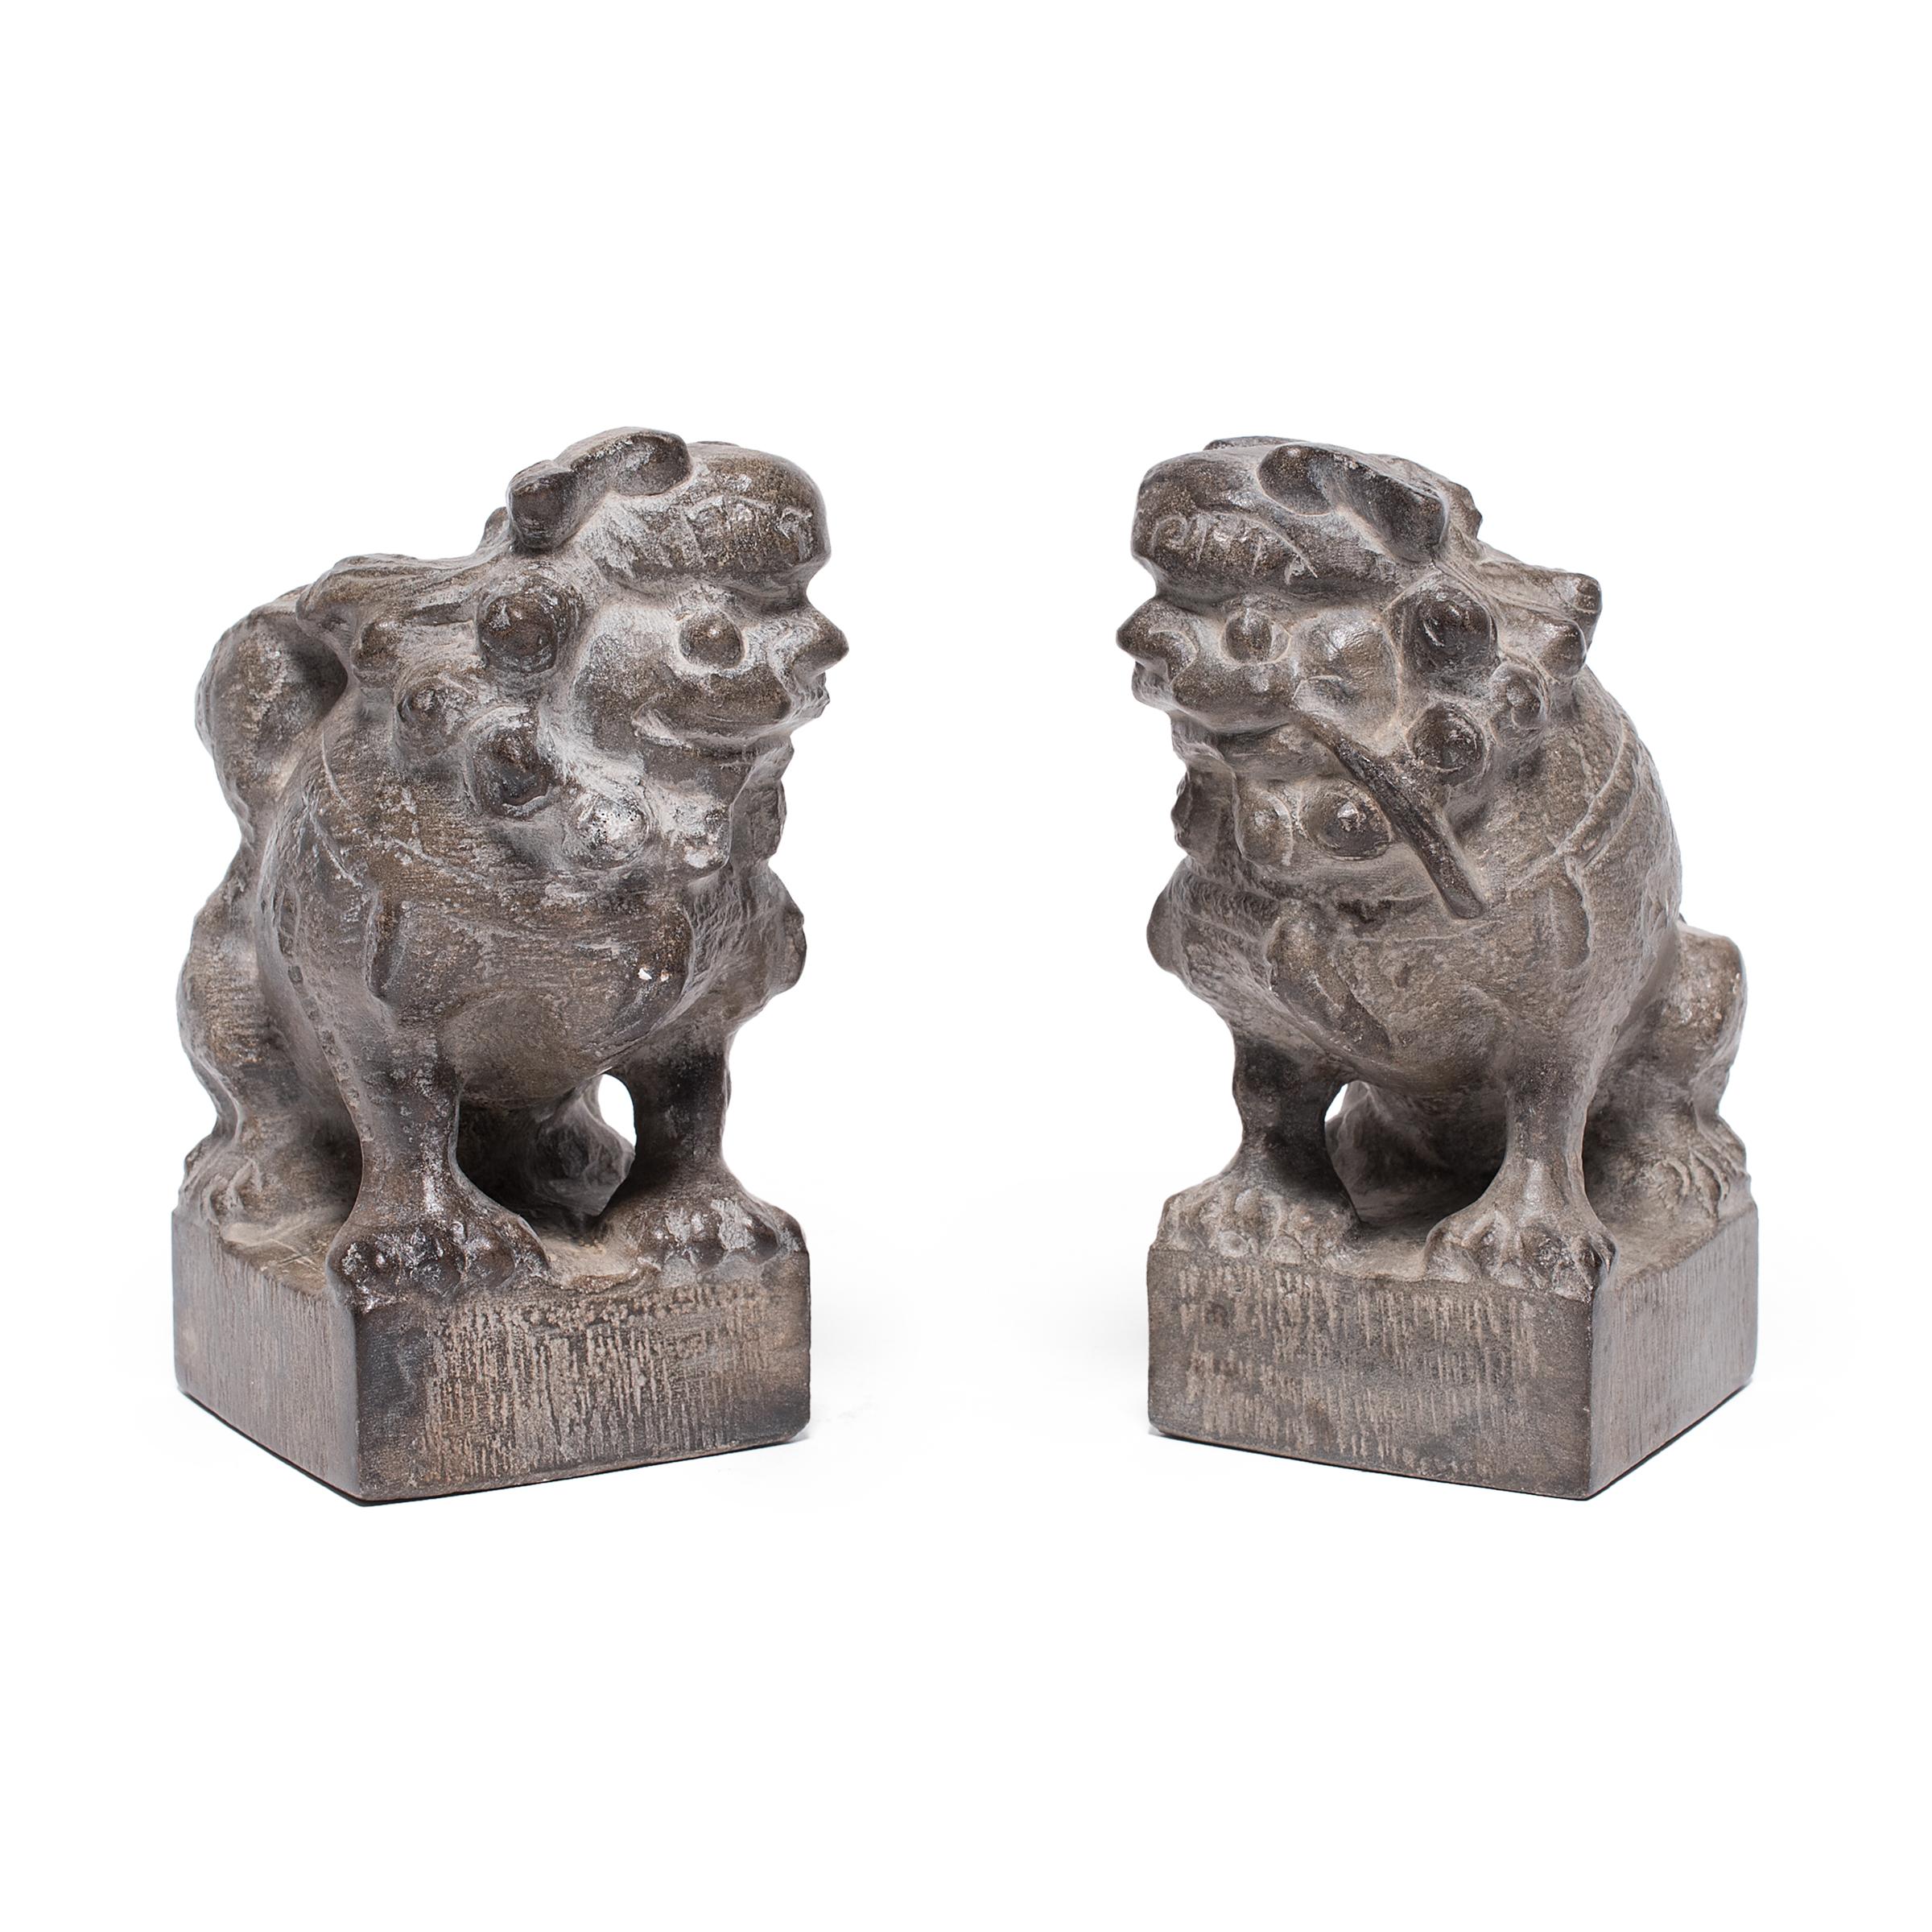 Mit ihren lockigen Mähnen und ihrem verspielten Ausdruck sind diese zierlichen Stone-Fu-Hunde liebenswerte Begleiter und wohlwollende Wächter des Hauses. Das auch als Shizi bekannte Paar steht für Yin und Yang, die dualen Kräfte des Universums. In